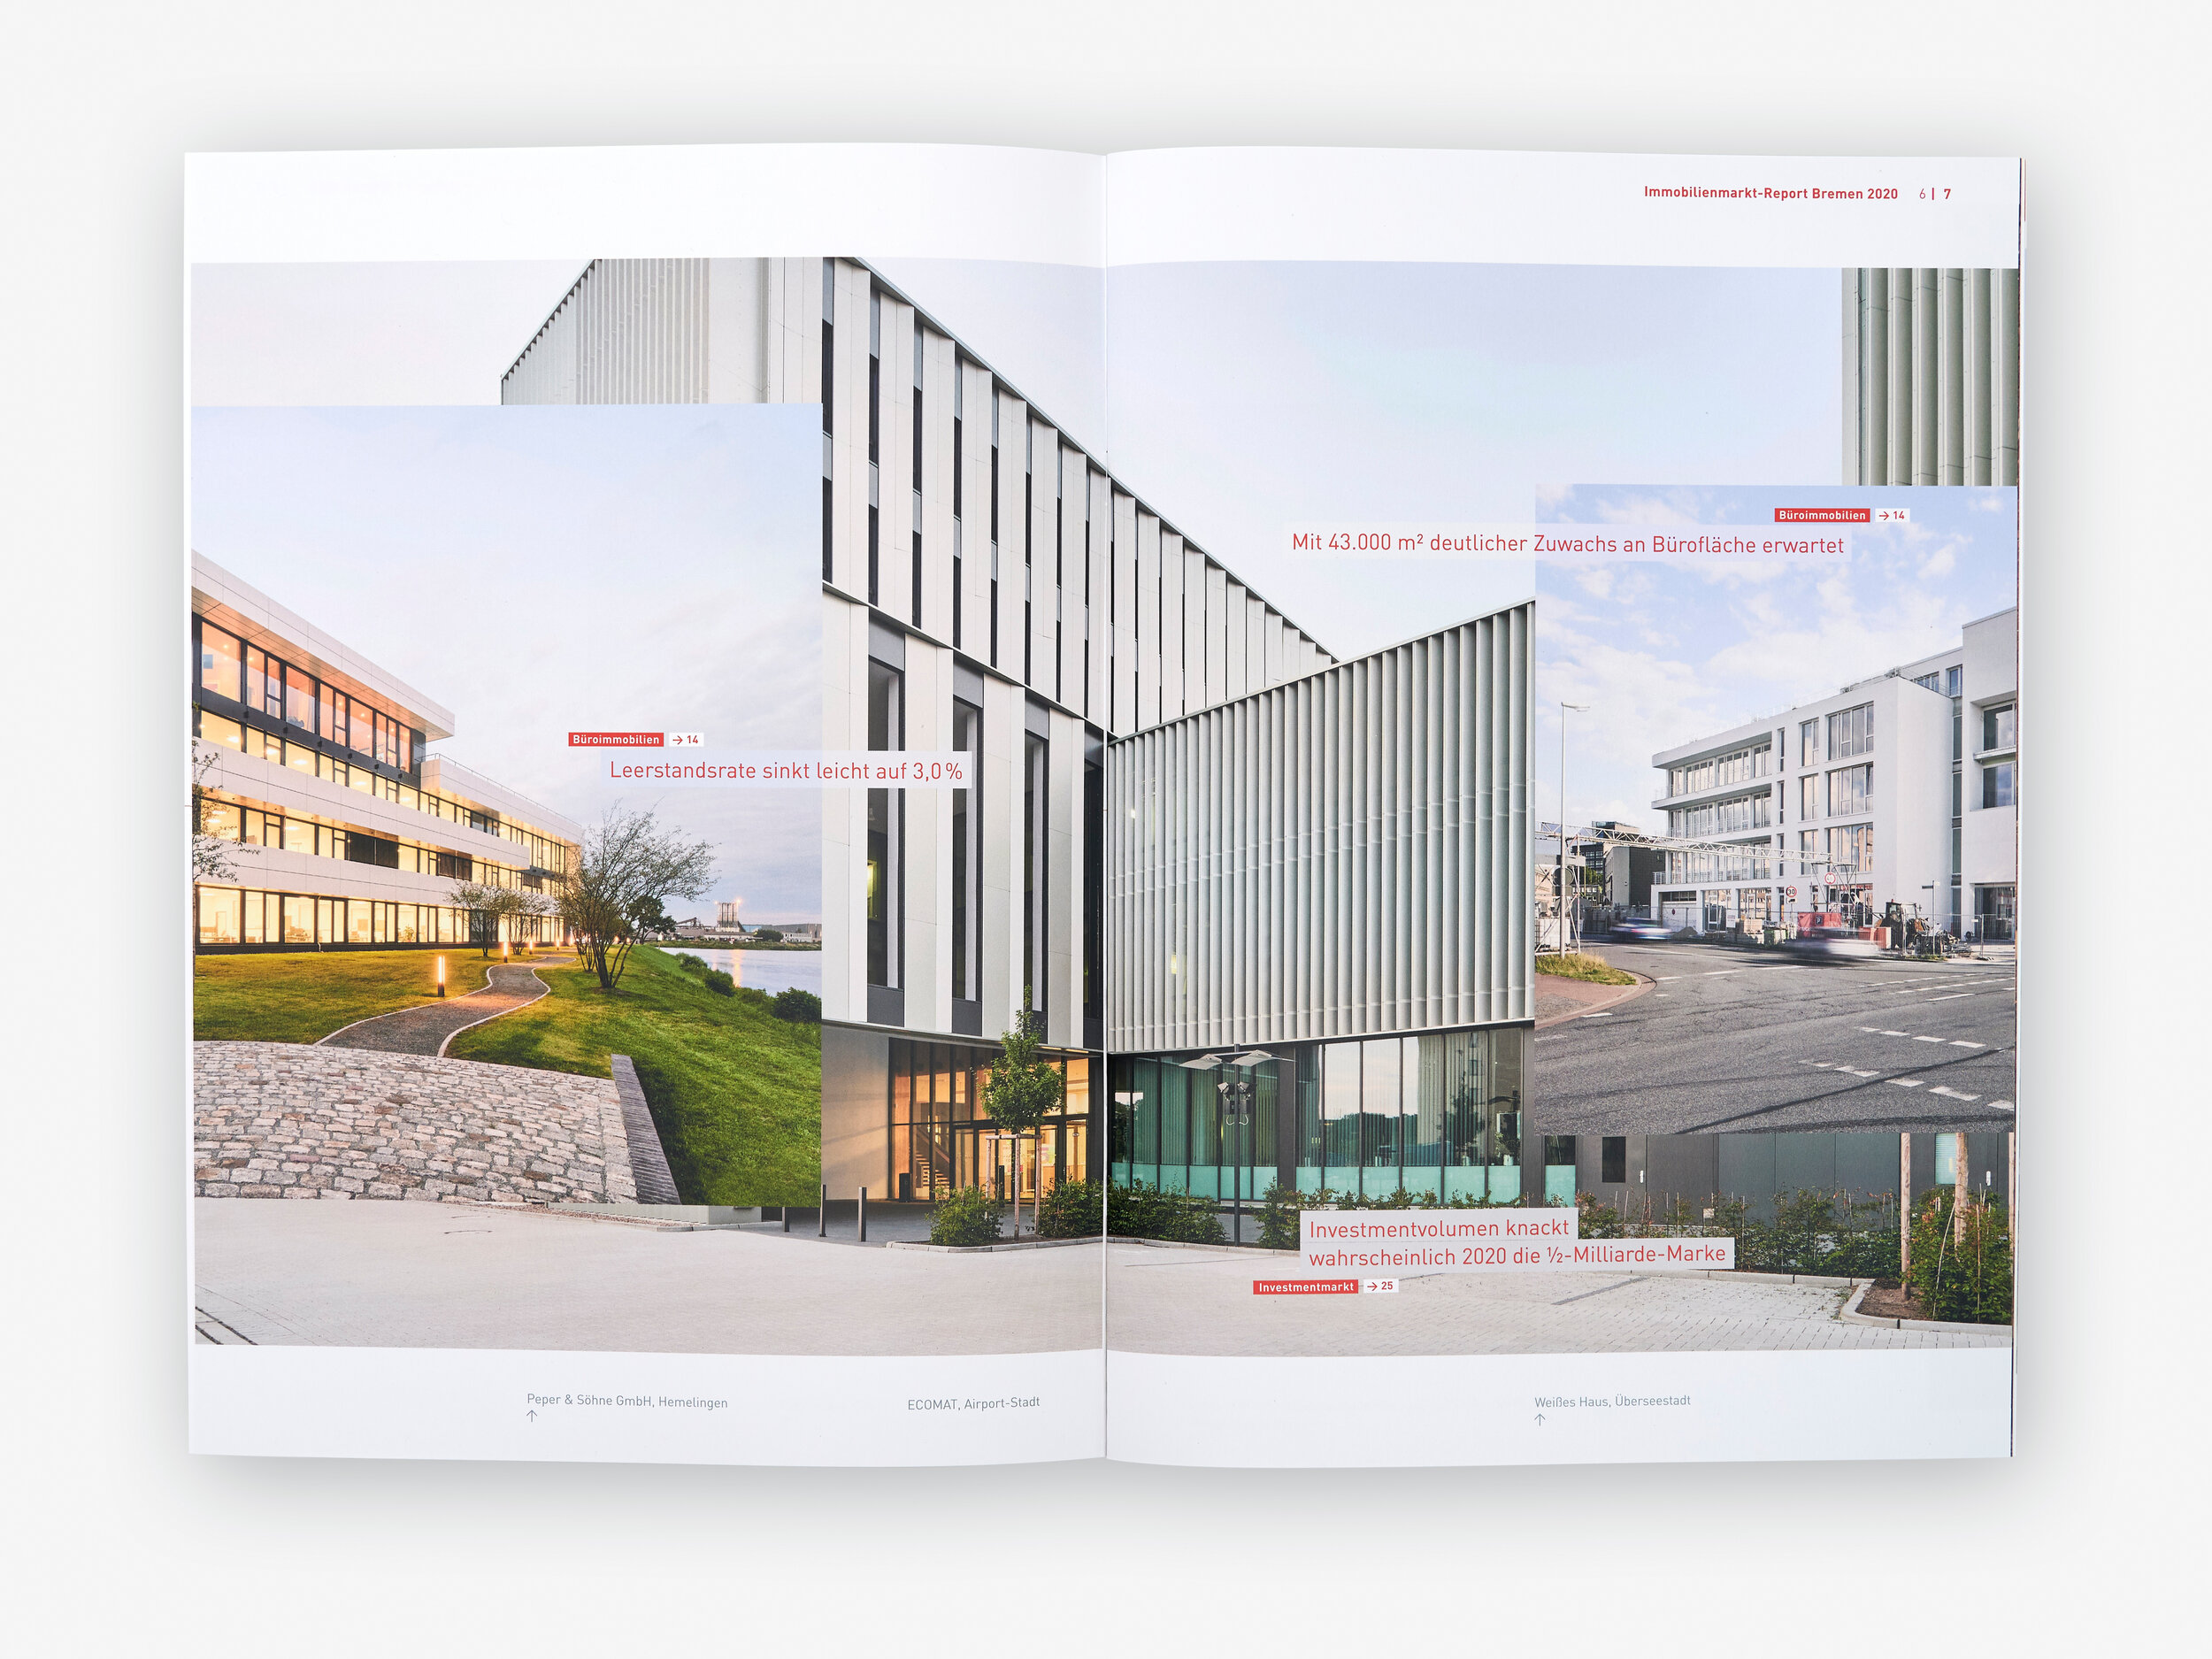  Immobilienmarktreport 2020 der Wirtschaftsförderung Bremen, gestaltet von oblik visual identity, Bremen, 2020-10-13, Foto: Caspar Sessler 